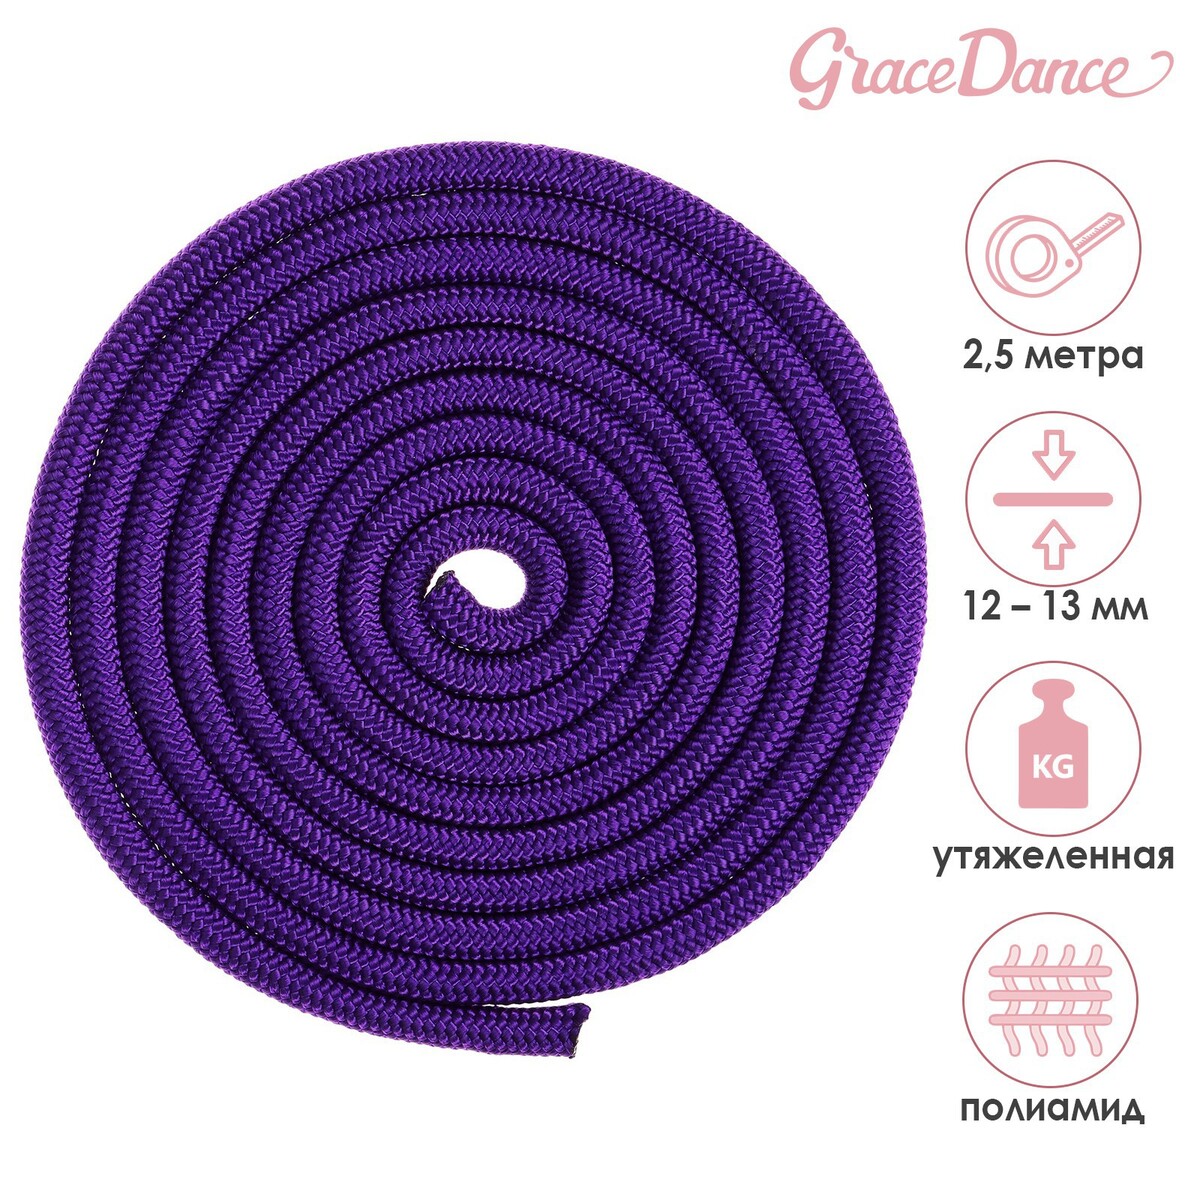 Скакалка для художественной гимнастики утяжеленная grace dance, 2,5 м, цвет фиолетовый скакалка гимнастическая с люрексом body form bf sk04 bf jrgl01 3м 180гр фиолетовый